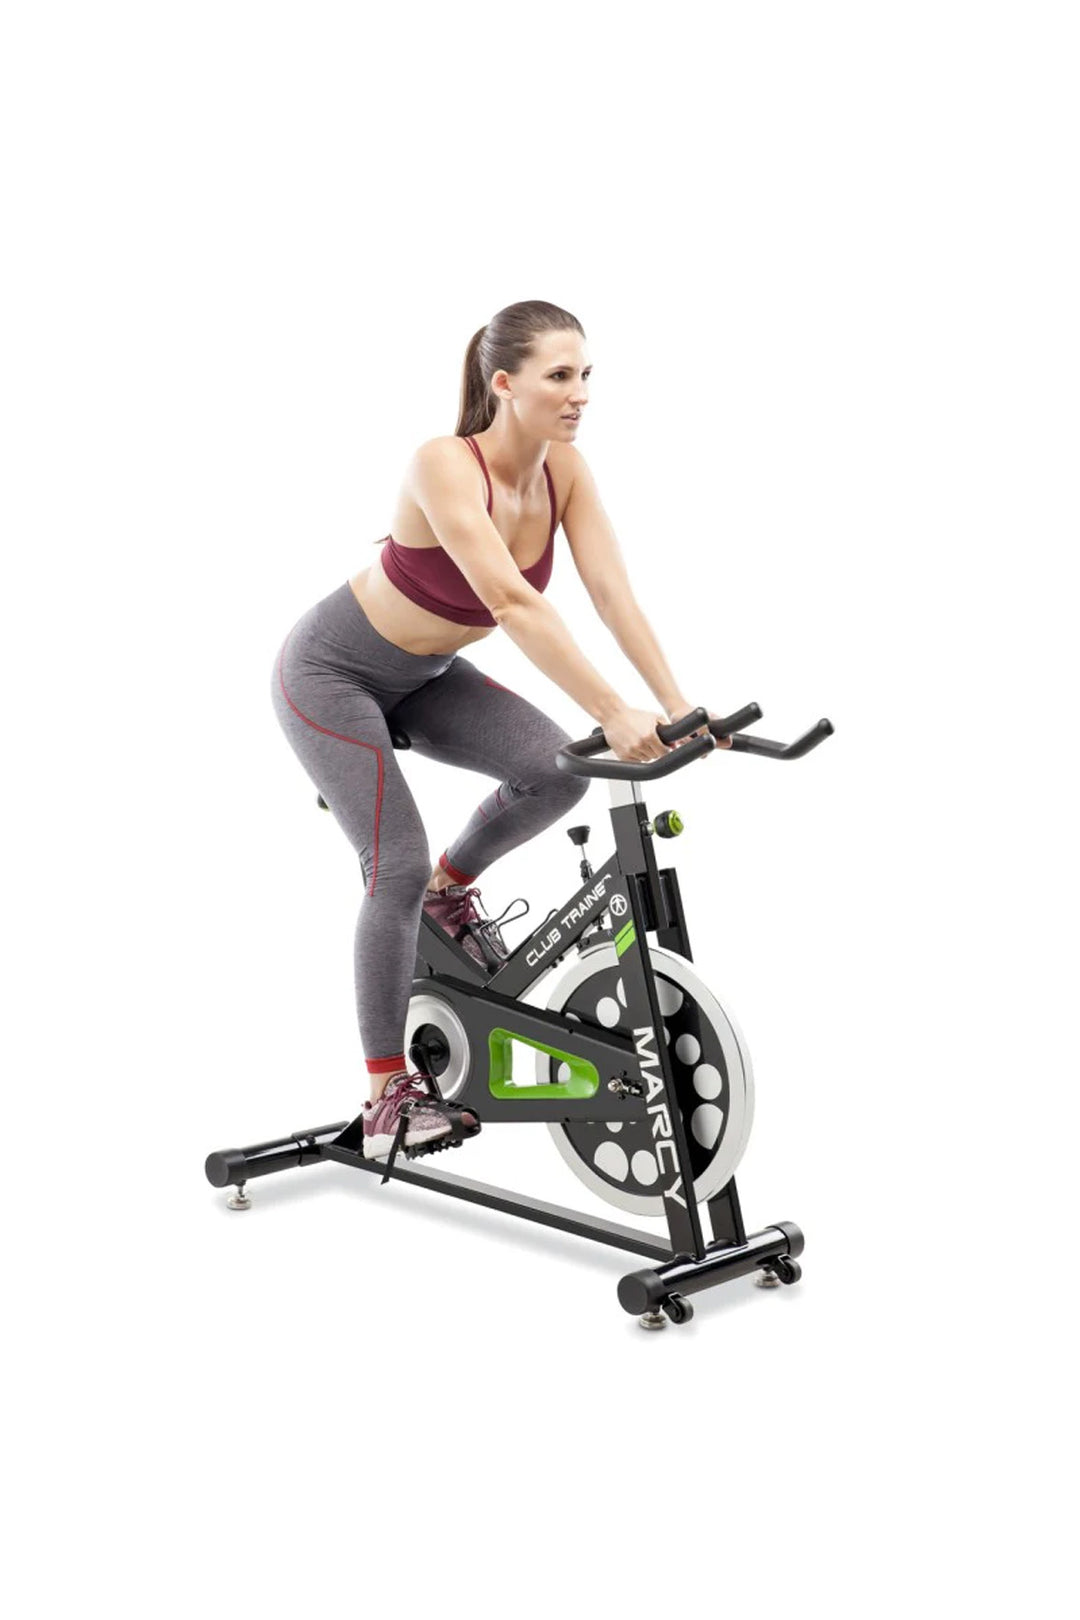 Female exercising on spin bike